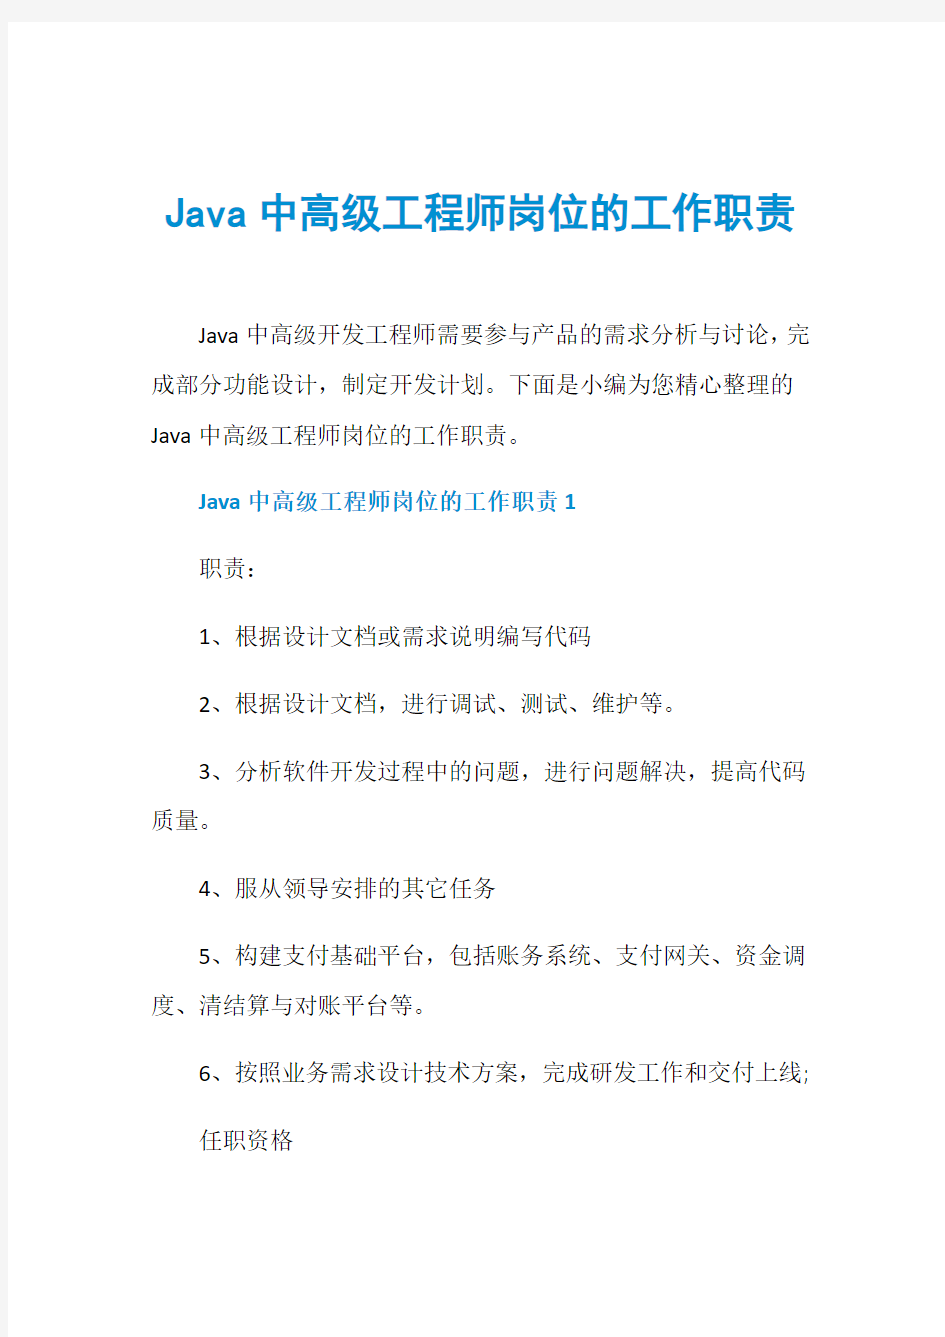 Java中高级工程师岗位的工作职责